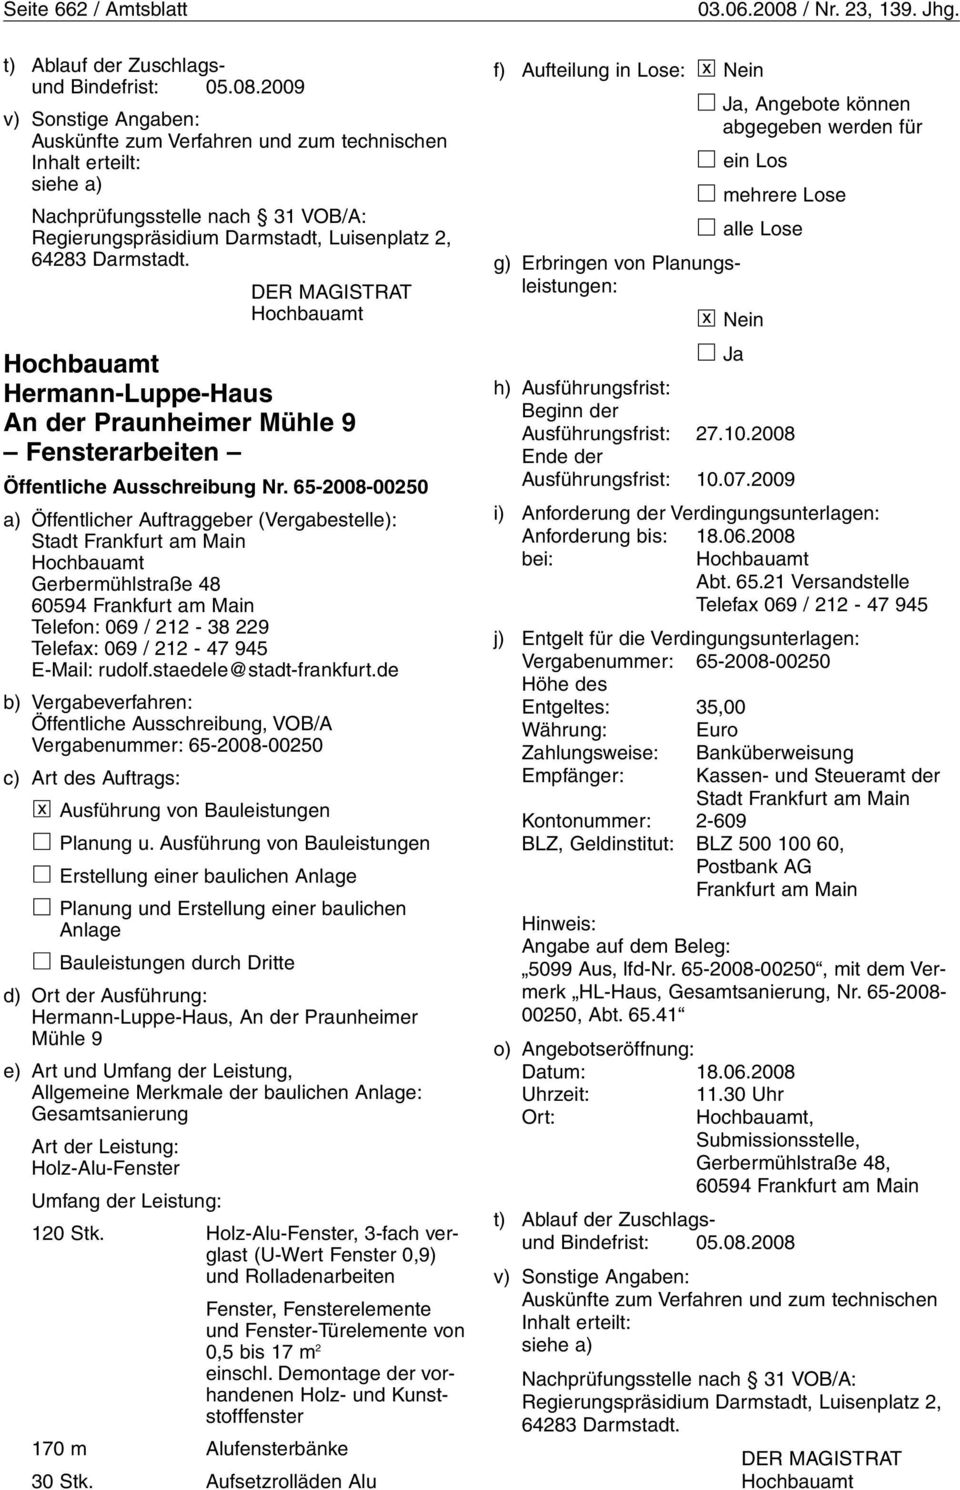 2009 v) Sonstige Angaben: Auskünfte zum Verfahren und zum technischen Inhalt erteilt: siehe a) Nachprüfungsstelle nach 31 VOB/A: Regierungspräsidium Darmstadt, Luisenplatz 2, 64283 Darmstadt.